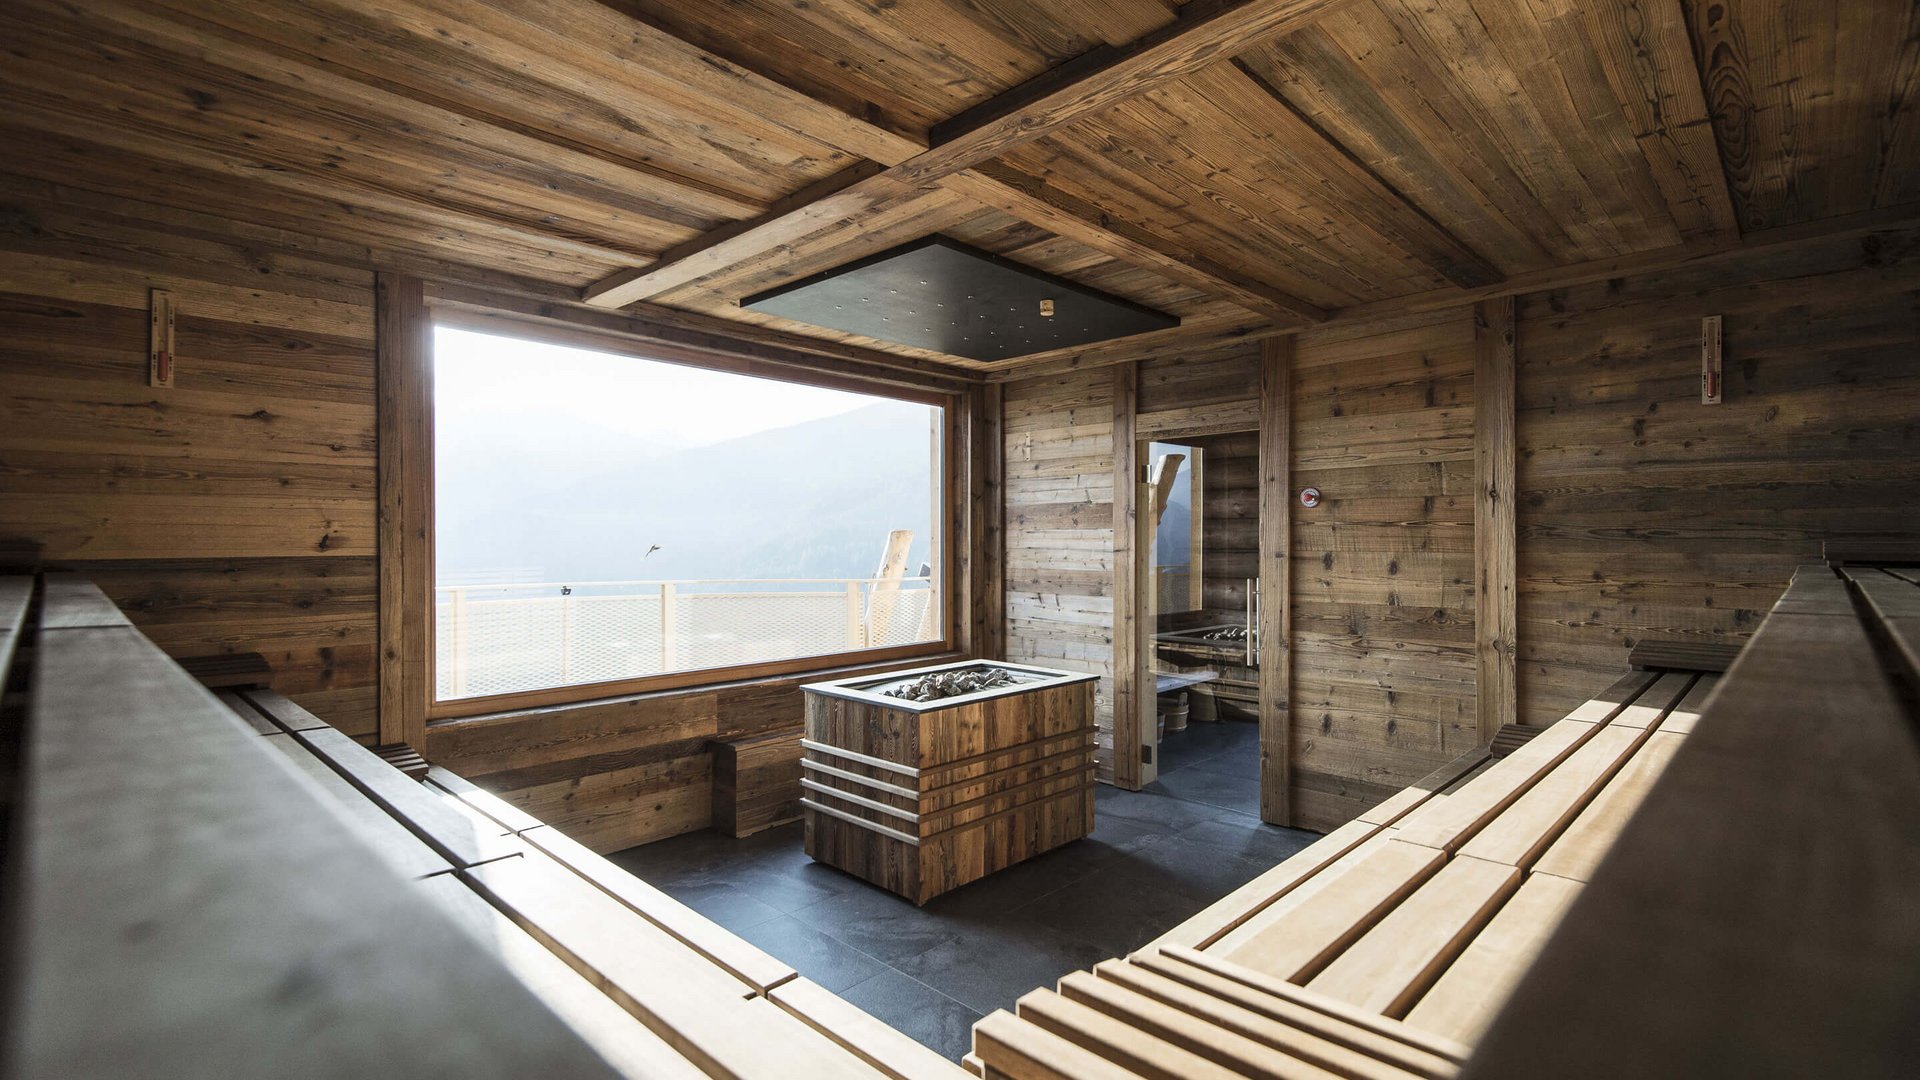 Our sauna, Plan de Corones/Kronplatz in full view